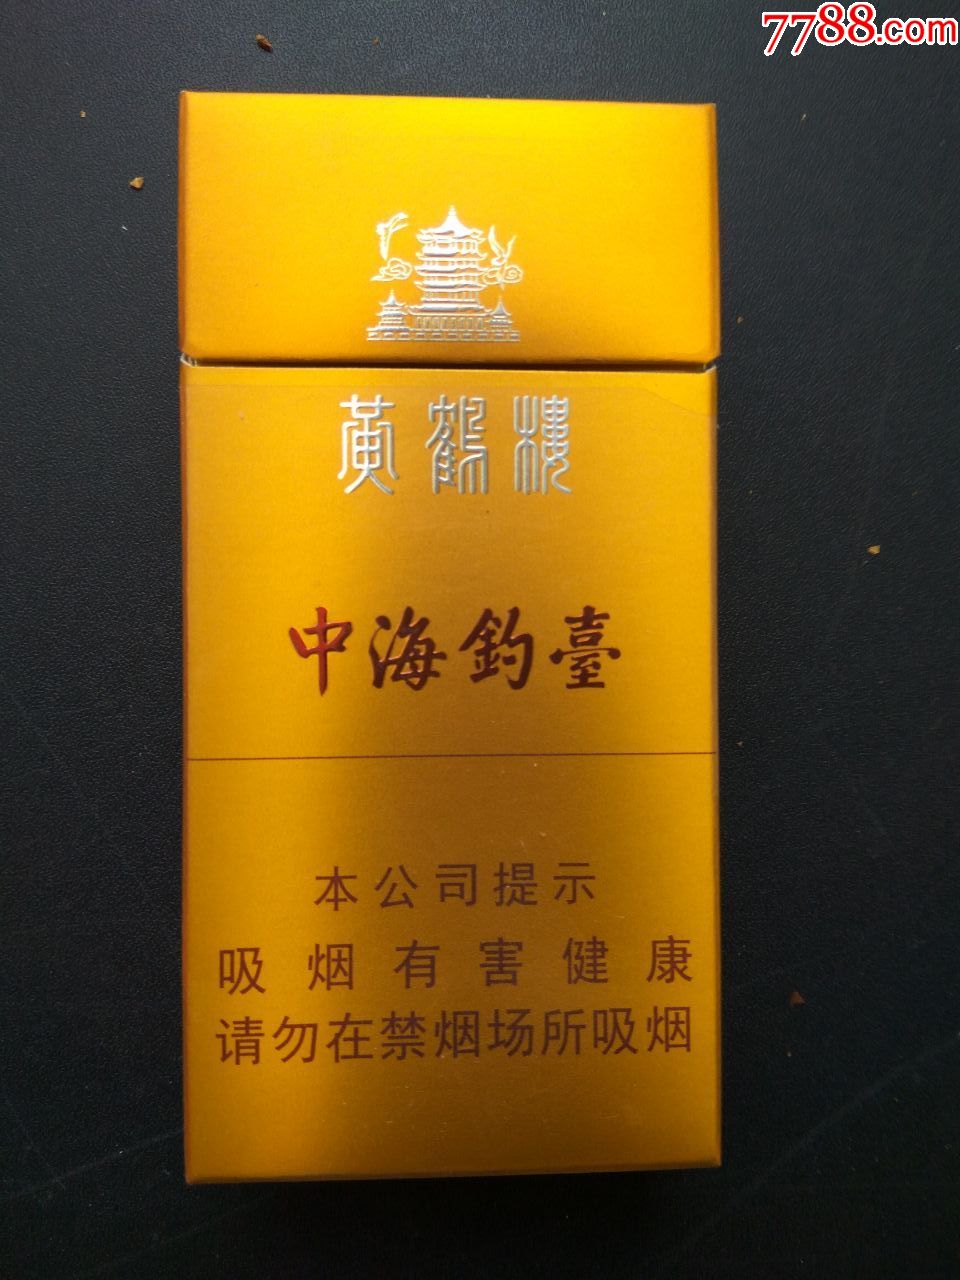 3d(黄鹤楼-中海钓台);16版;多图网上看好-烟标/烟盒